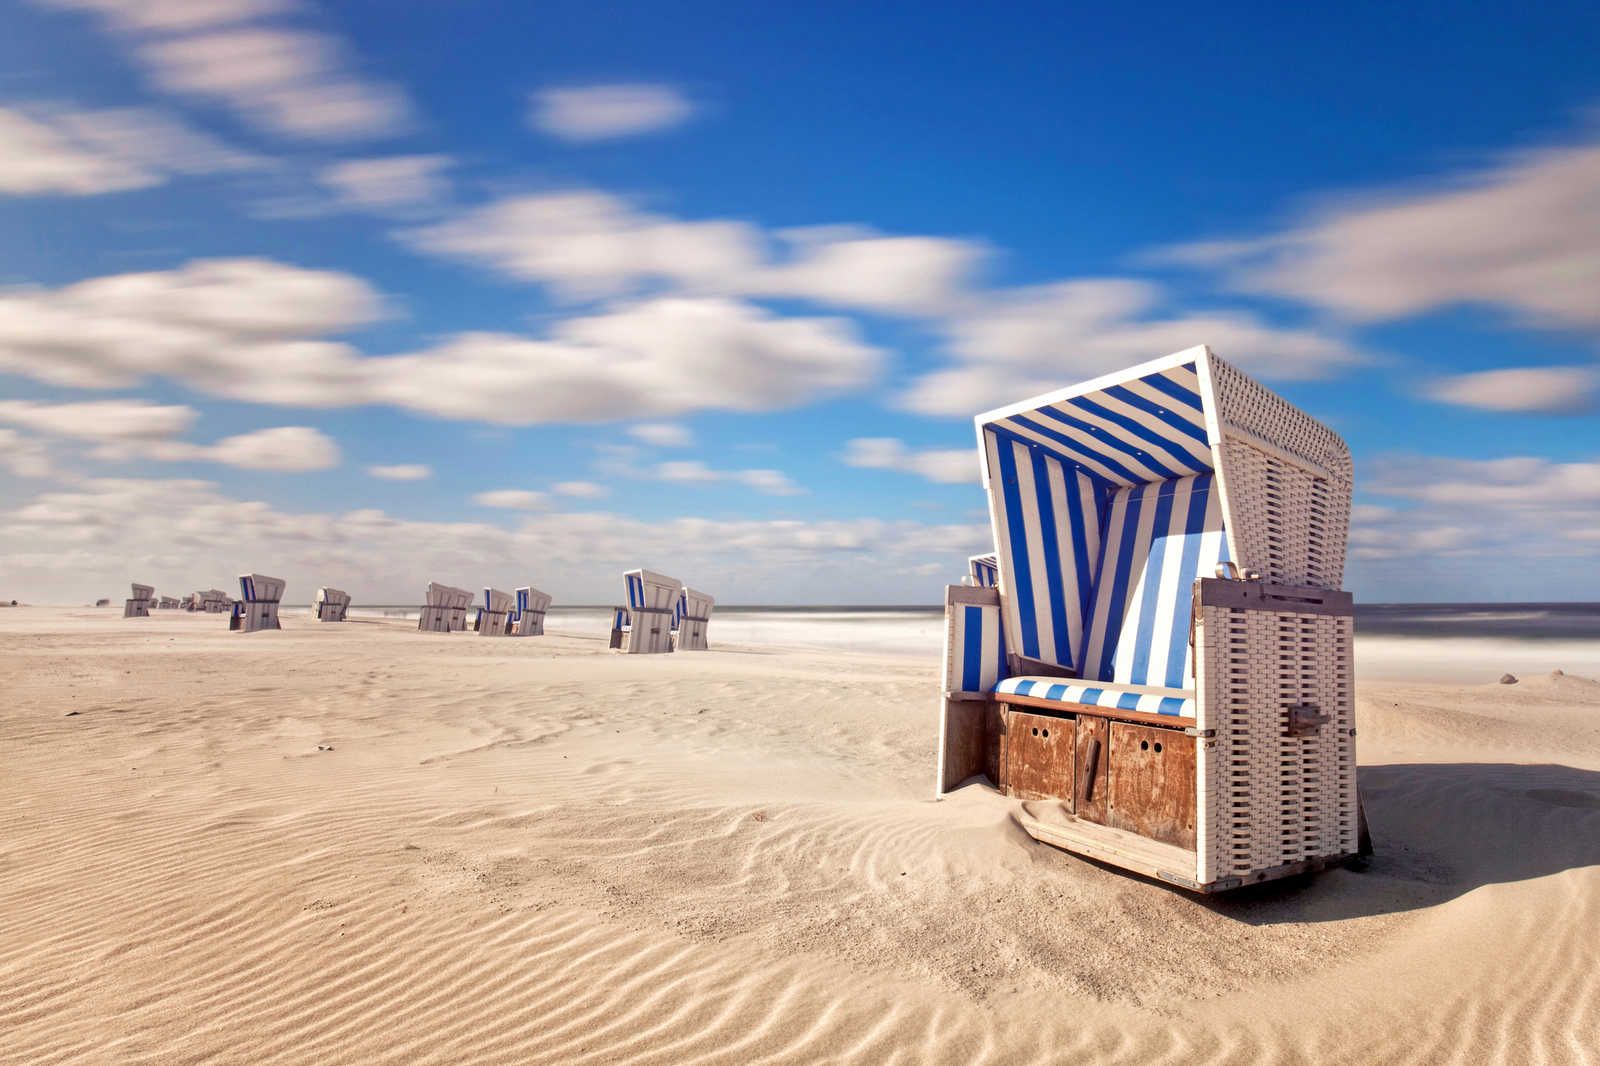             Cuadro Silla de playa junto al mar con cielo nublado - 0,90 m x 0,60 m
        